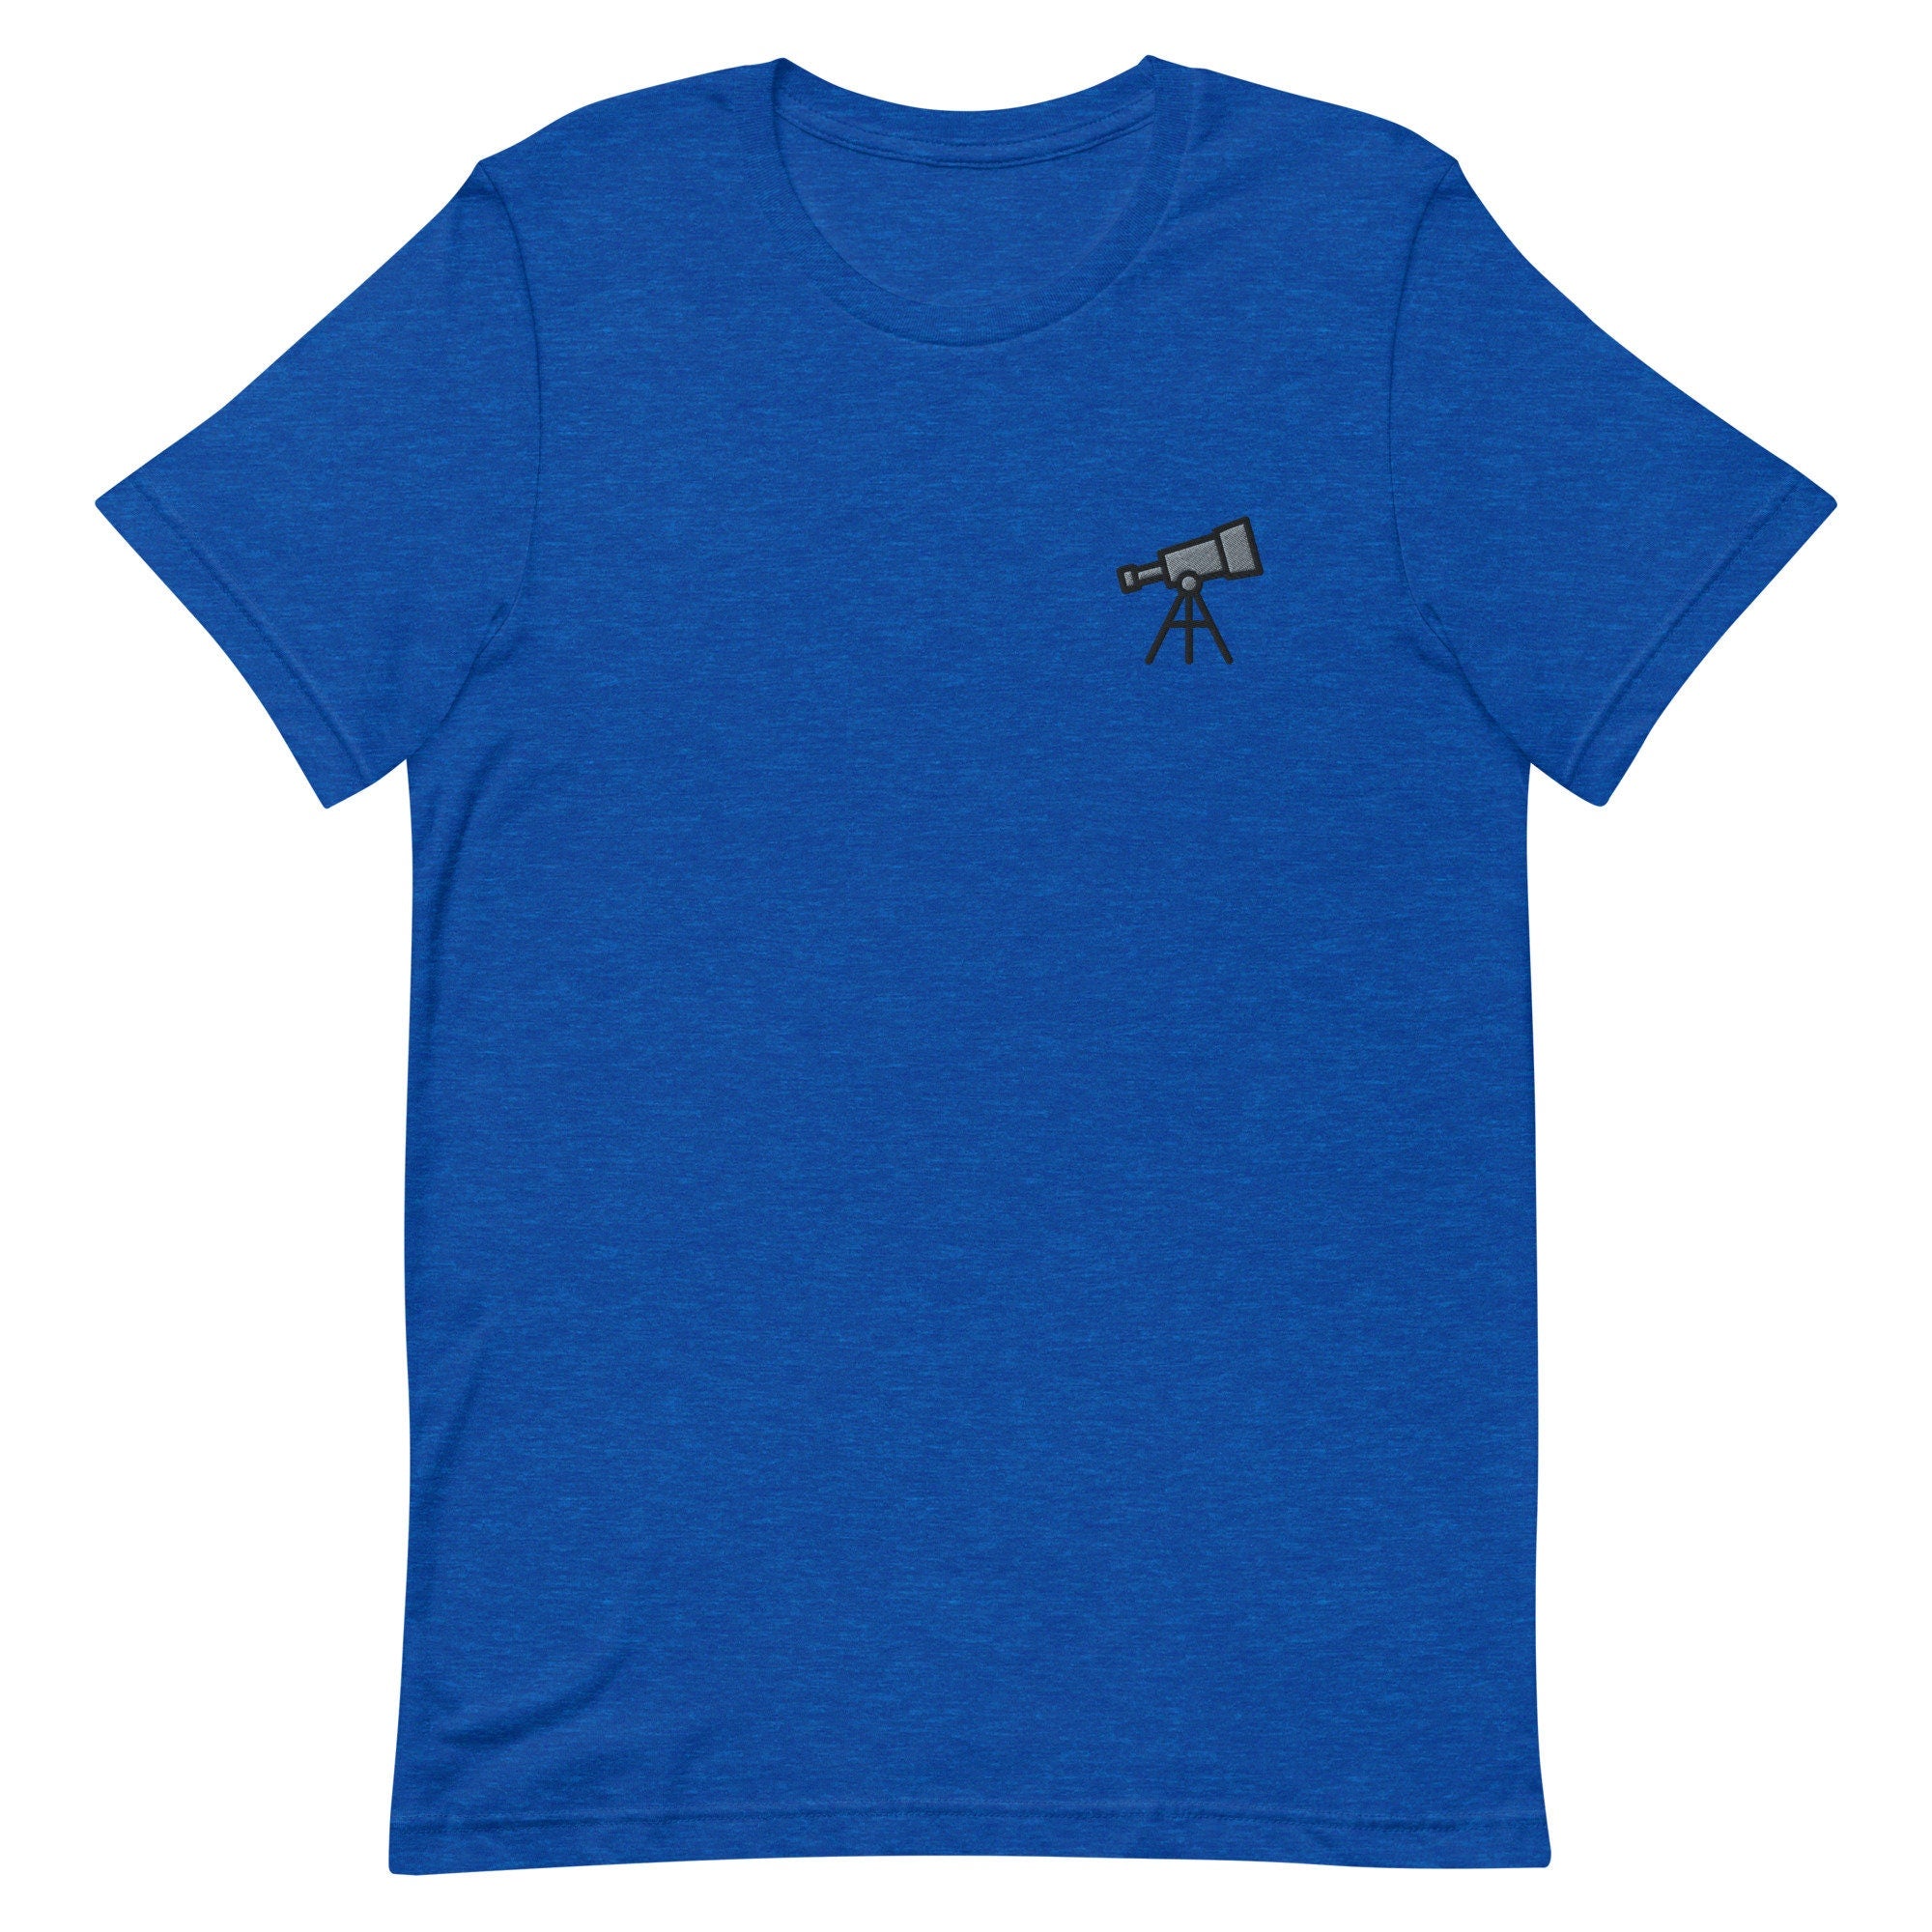 Telescope Premium Men's T-Shirt, Space Embroidered Men's T-Shirt Gift for Boyfriend, Men's Short Sleeve Shirt - Multiple Colors